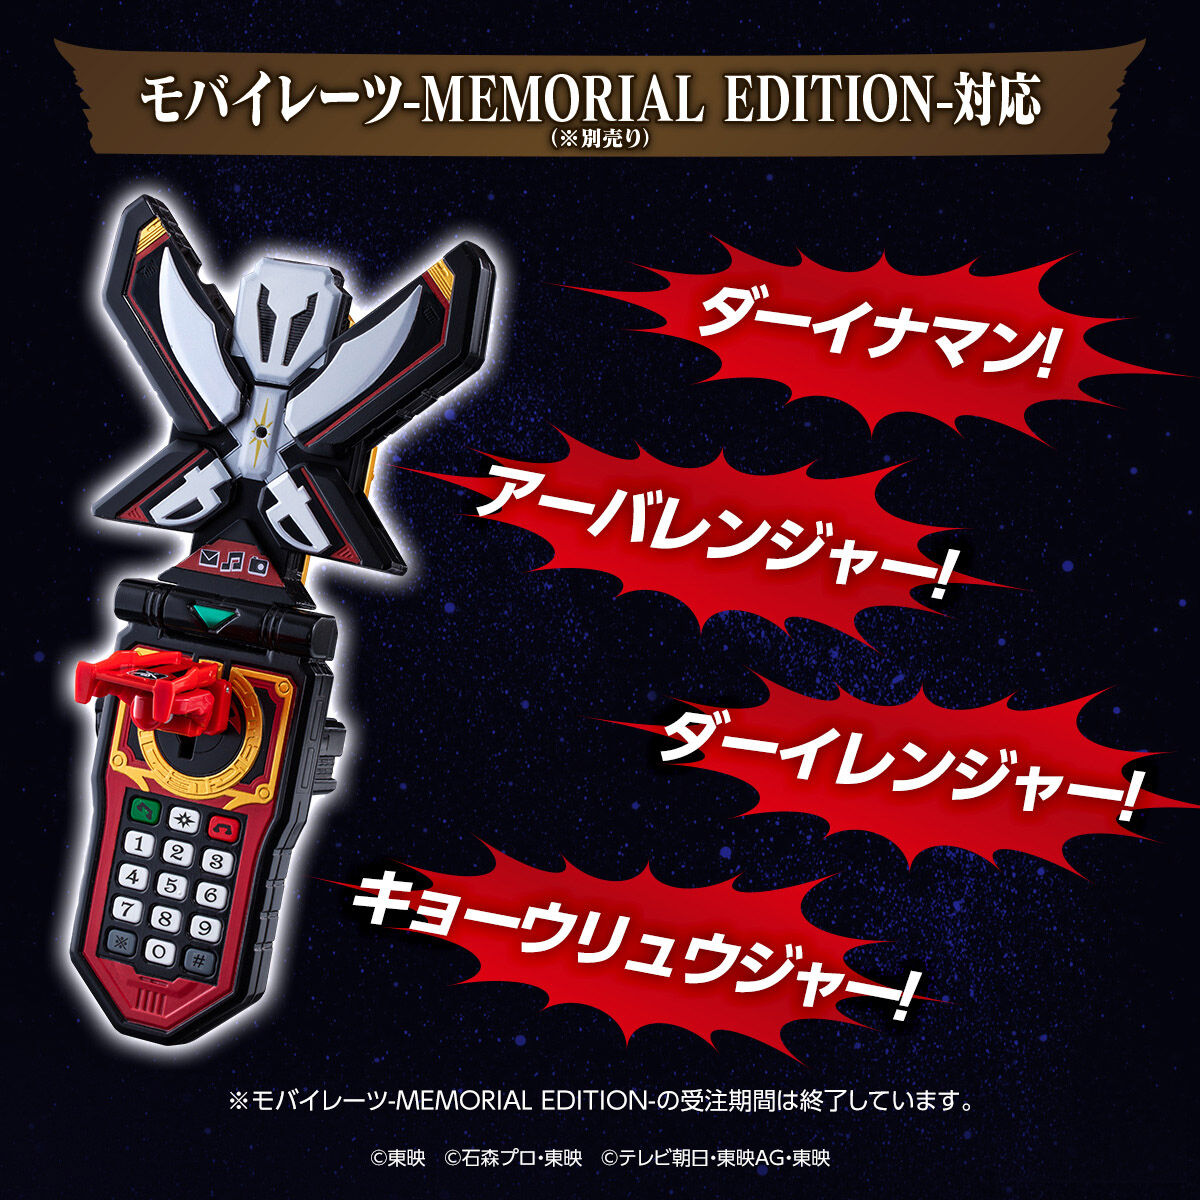 レンジャーキー-MEMORIAL EDITION Anniversary Heroes and King-Ohger Set